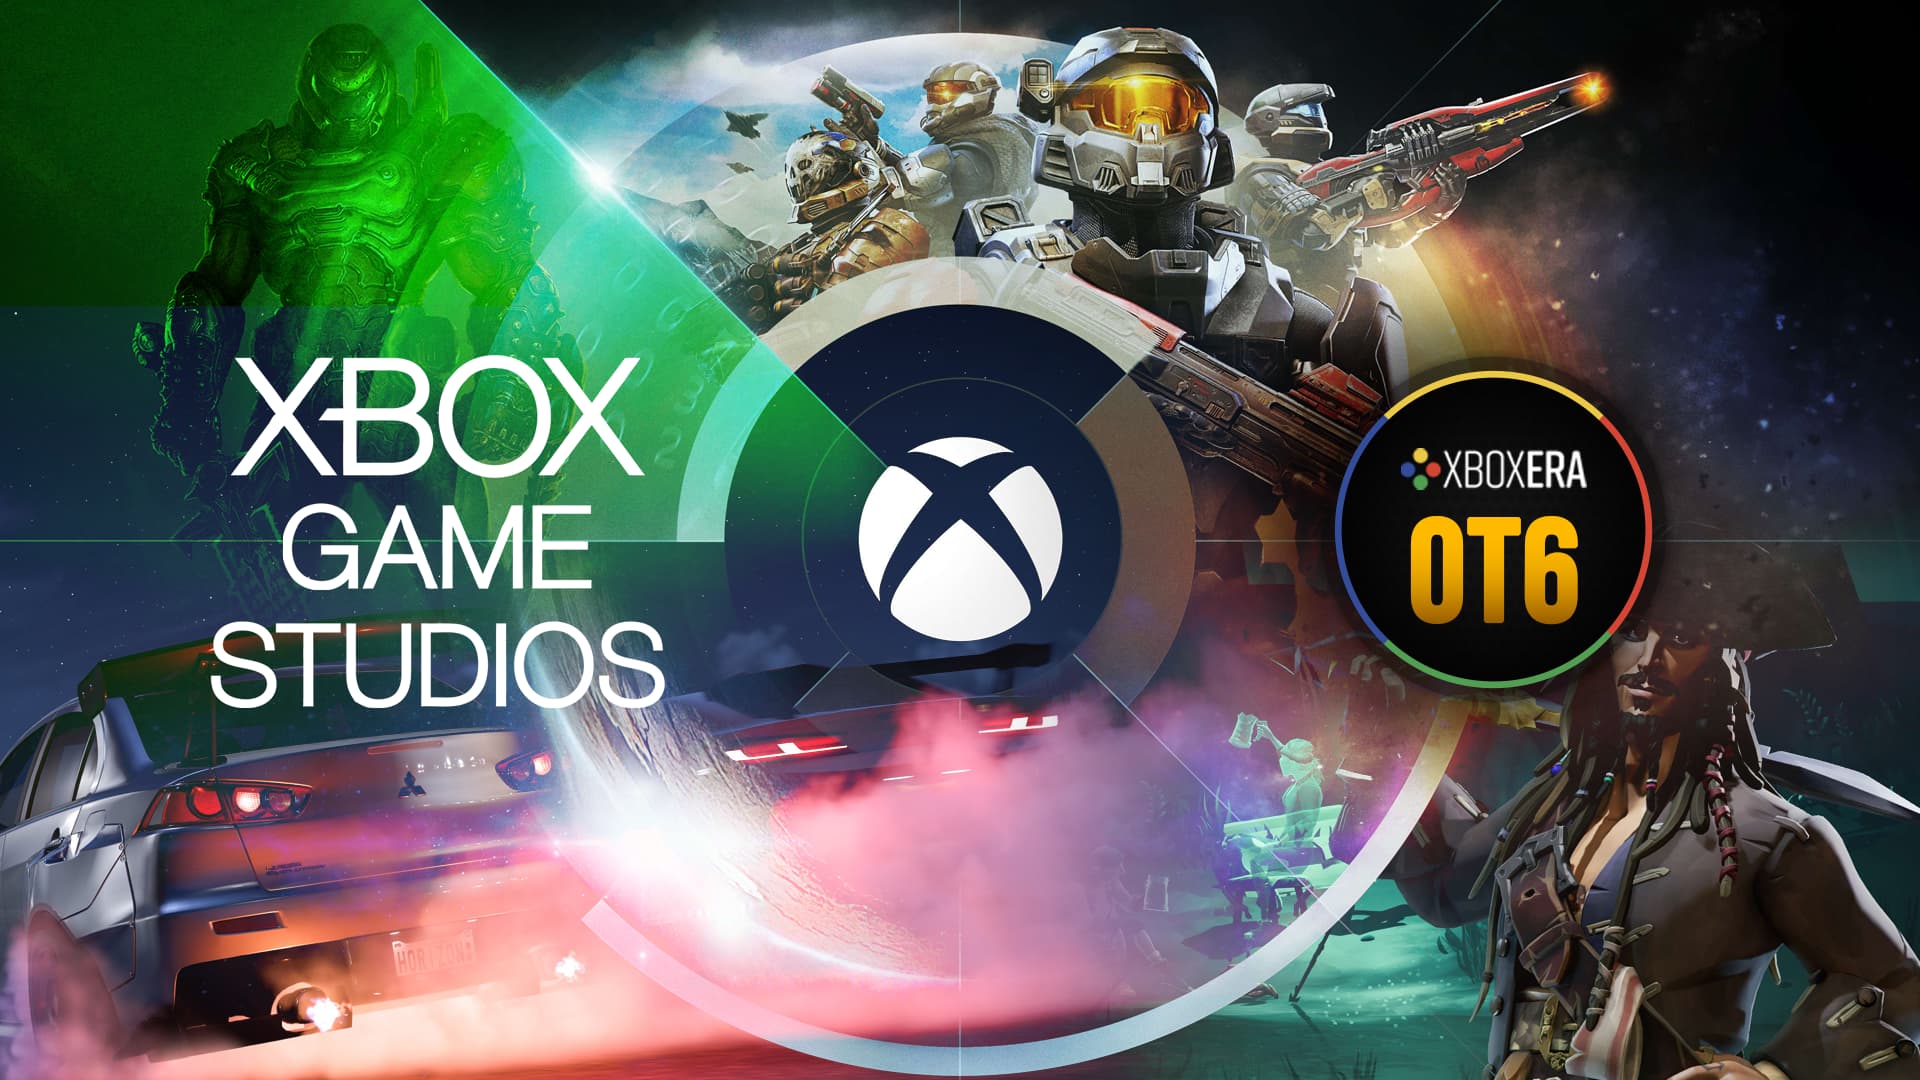 Xbox Game Studios Publishing (@XboxPublishing) / X